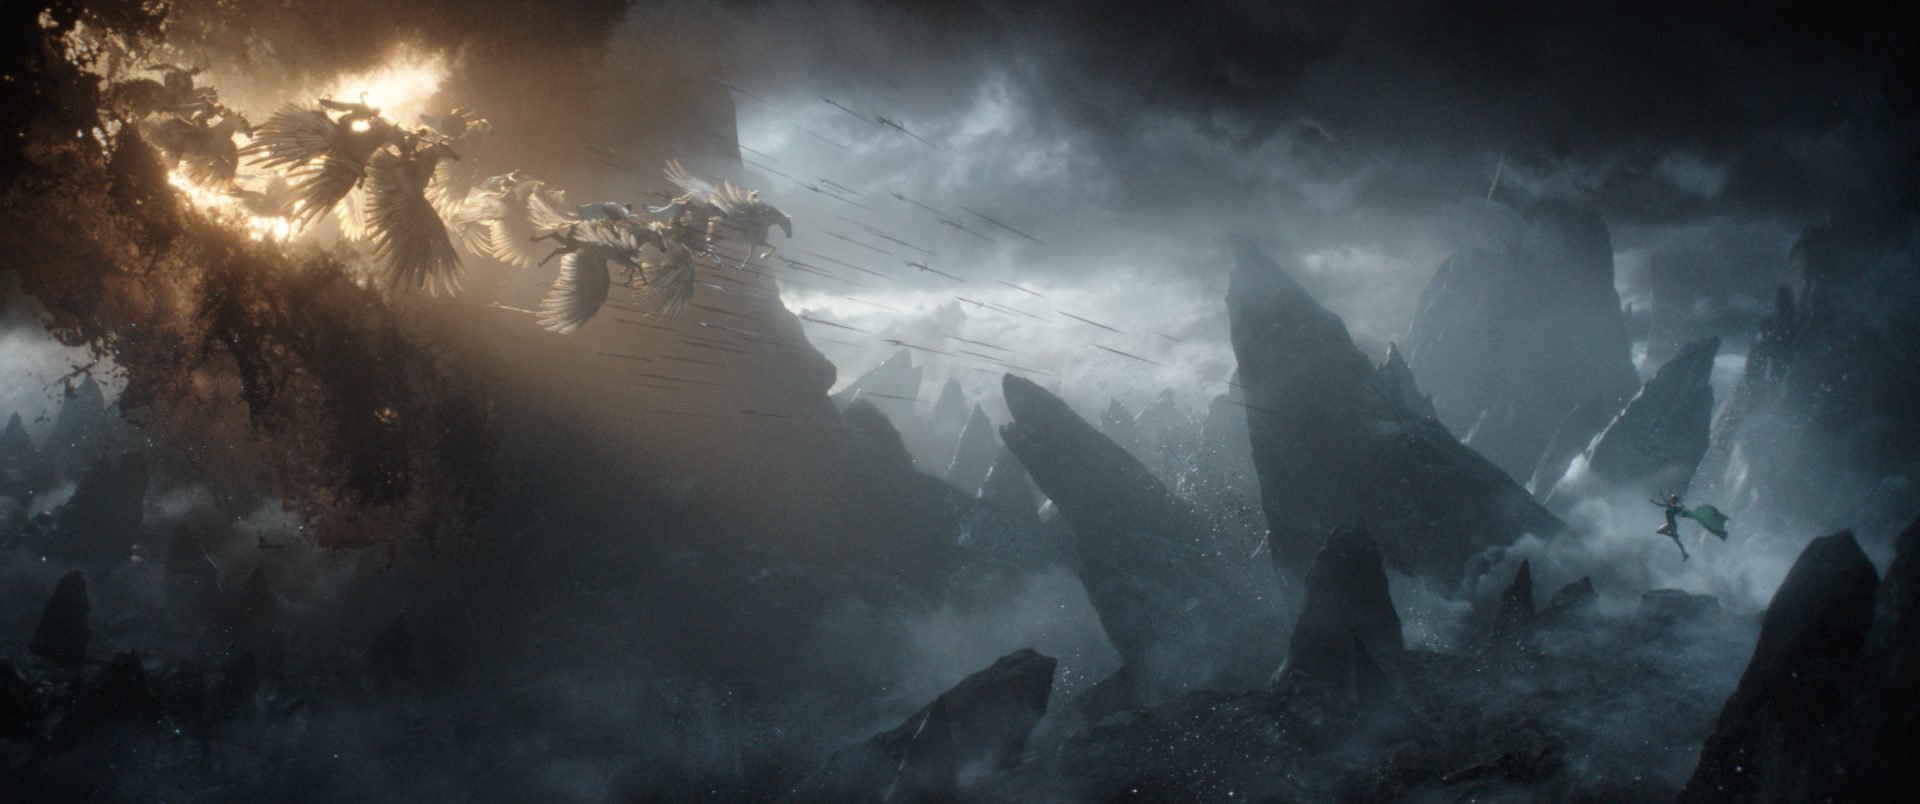 Walküren reiten auf geflügelten Pferden aus einer Wolke in Richtung von Hela in einer düsteren Umgebung in einem Szenenbild für Kritik Thor Tag der Entscheidung